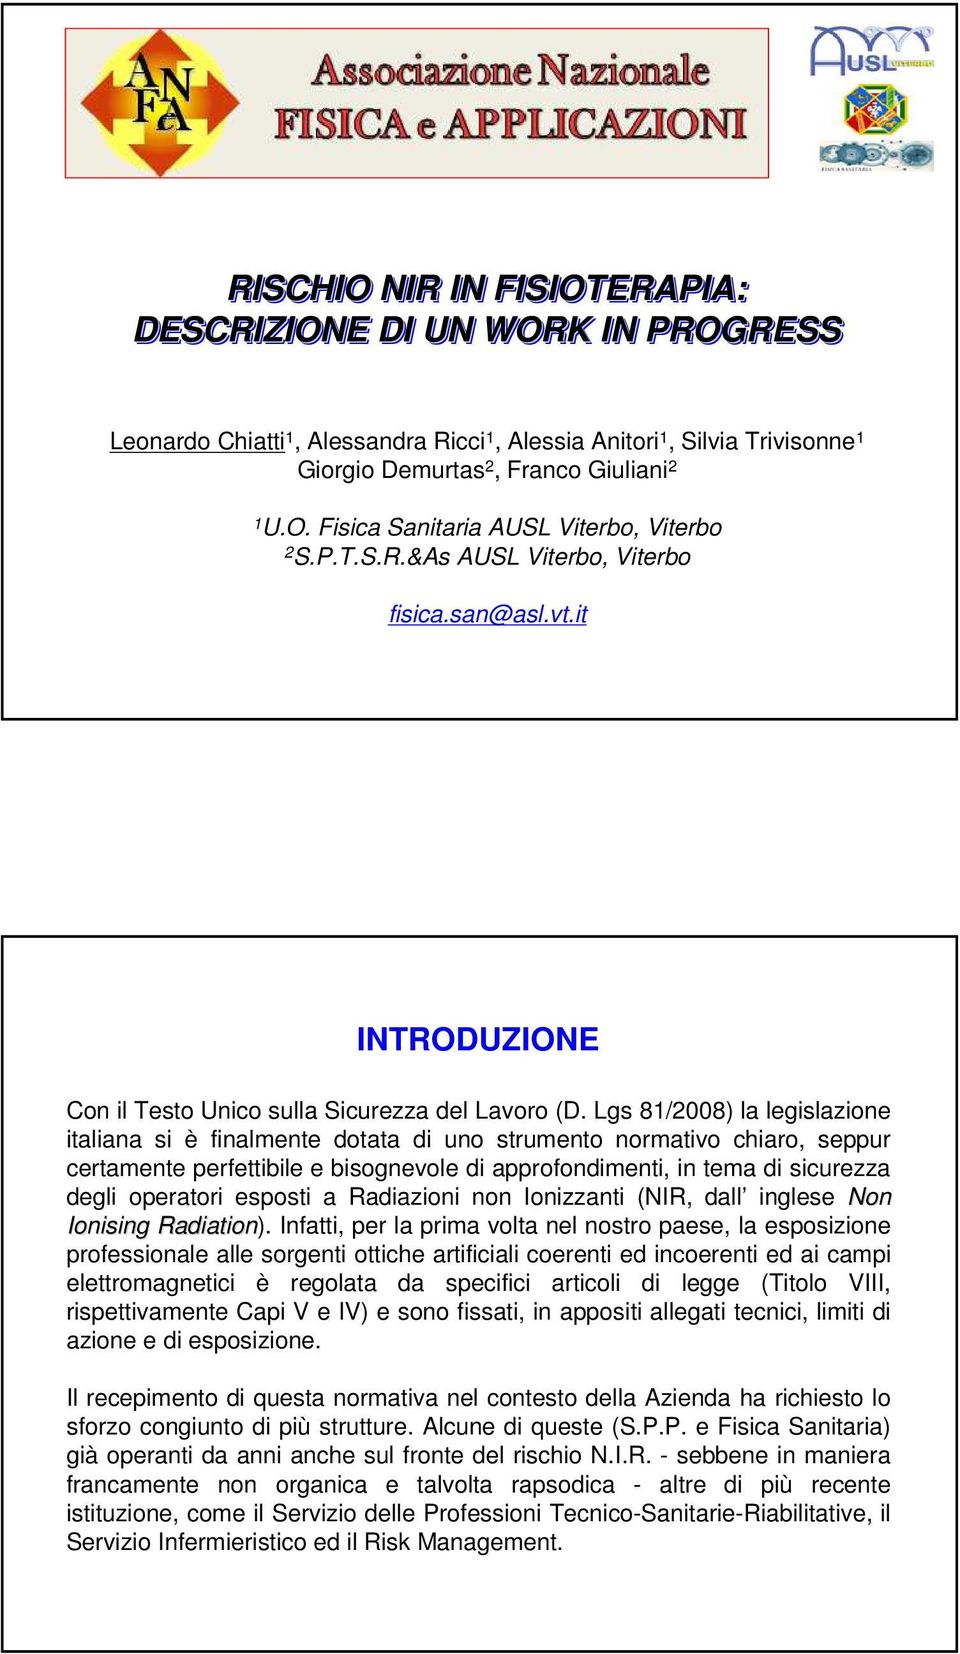 Lgs 81/2008) la legislazione italiana si è finalmente dotata di uno strumento normativo chiaro, seppur certamente perfettibile e bisognevole di approfondimenti, in tema di sicurezza degli operatori